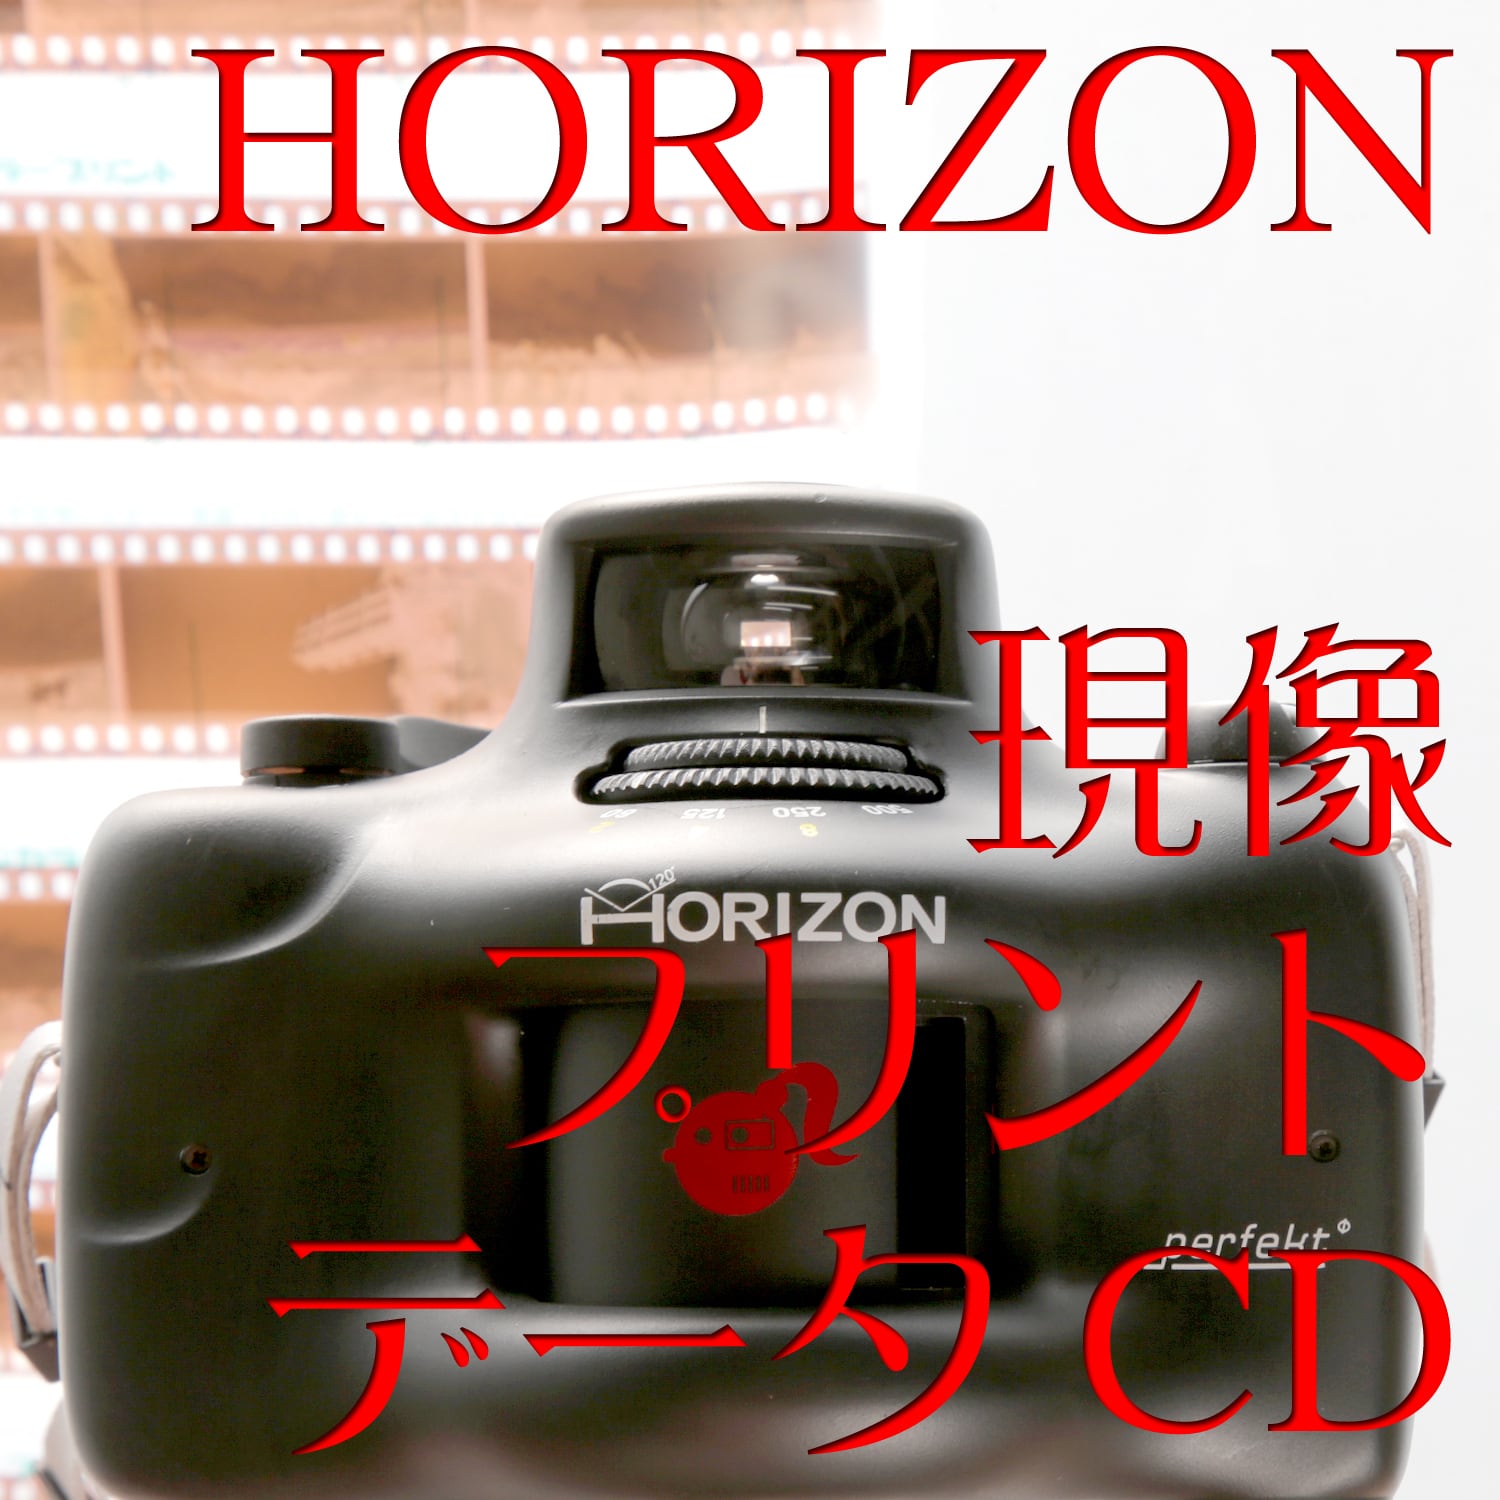 [現像+データ+プリント]:【ホライゾン Horizon Perfekt/Kompakt】カラーネガ135mmフィルム #フィルム #写真 #プリント  #焼付 #ロモグラフィー #Lomography